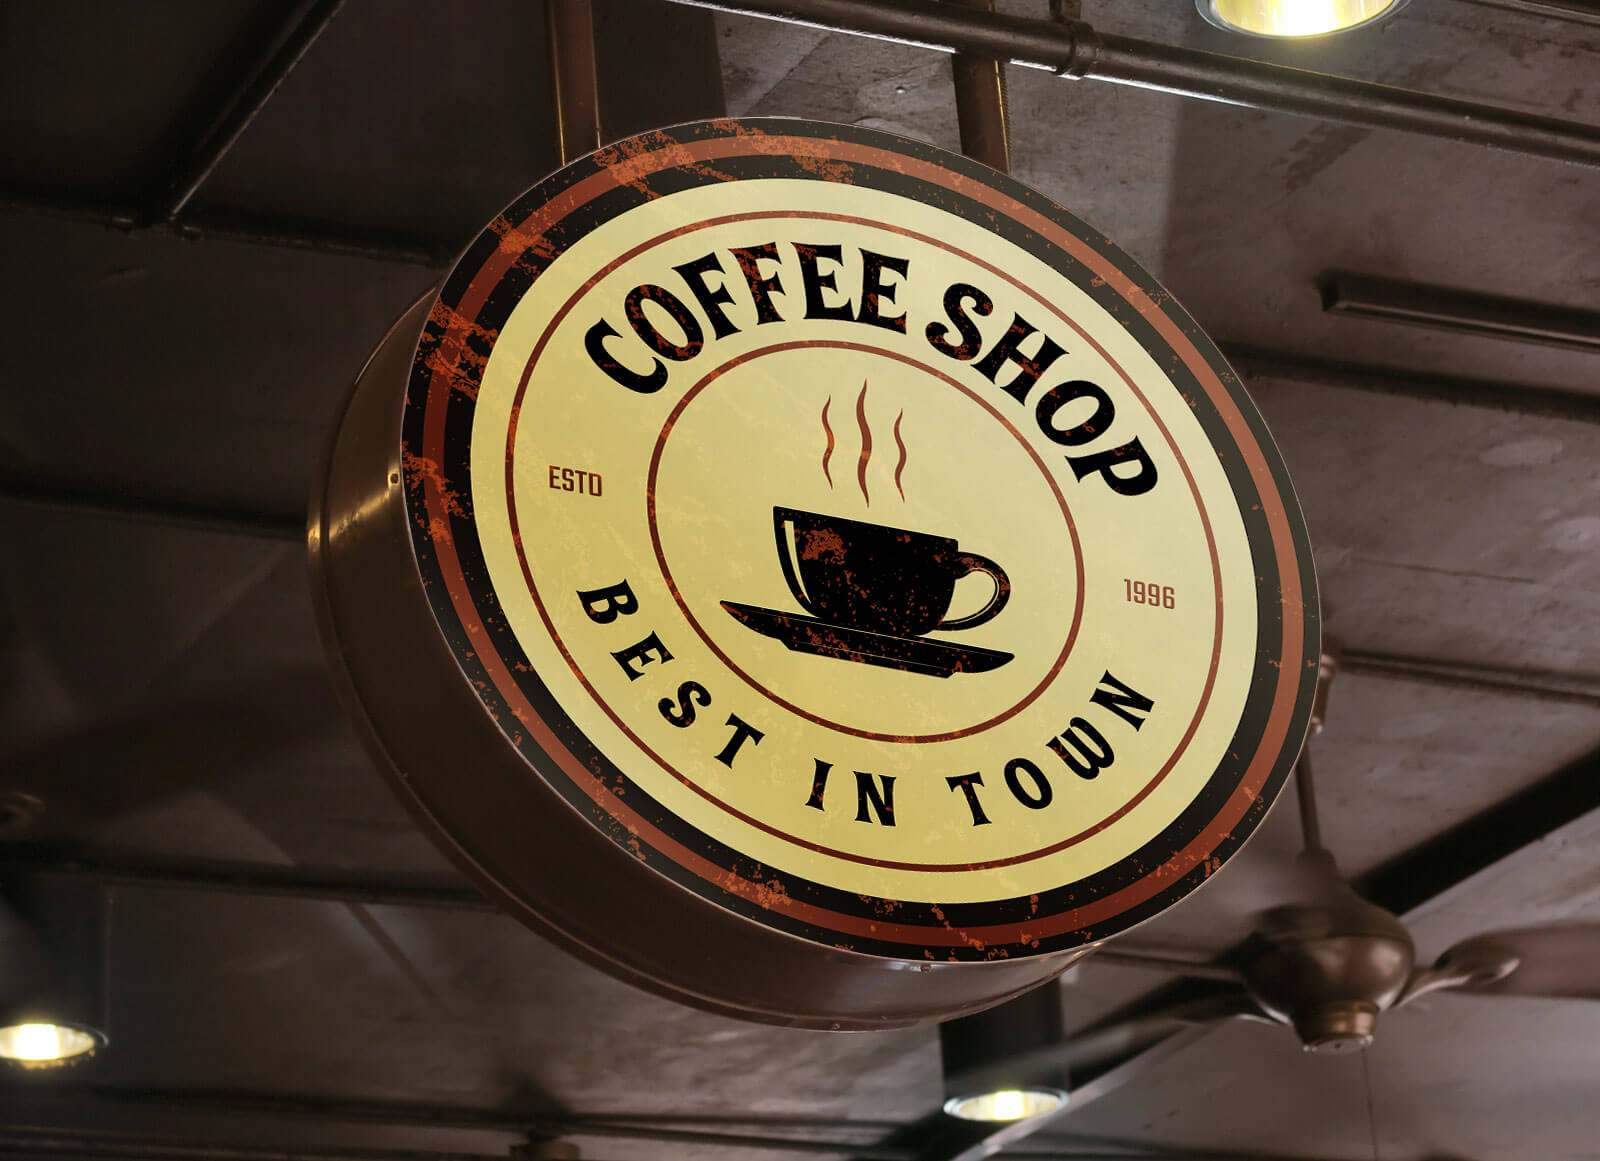 Round cafe. Круглая вывеска кафе. Вывеска для кофейни круглая. Мокап логотипа кафе. Круглый логотип кафе.